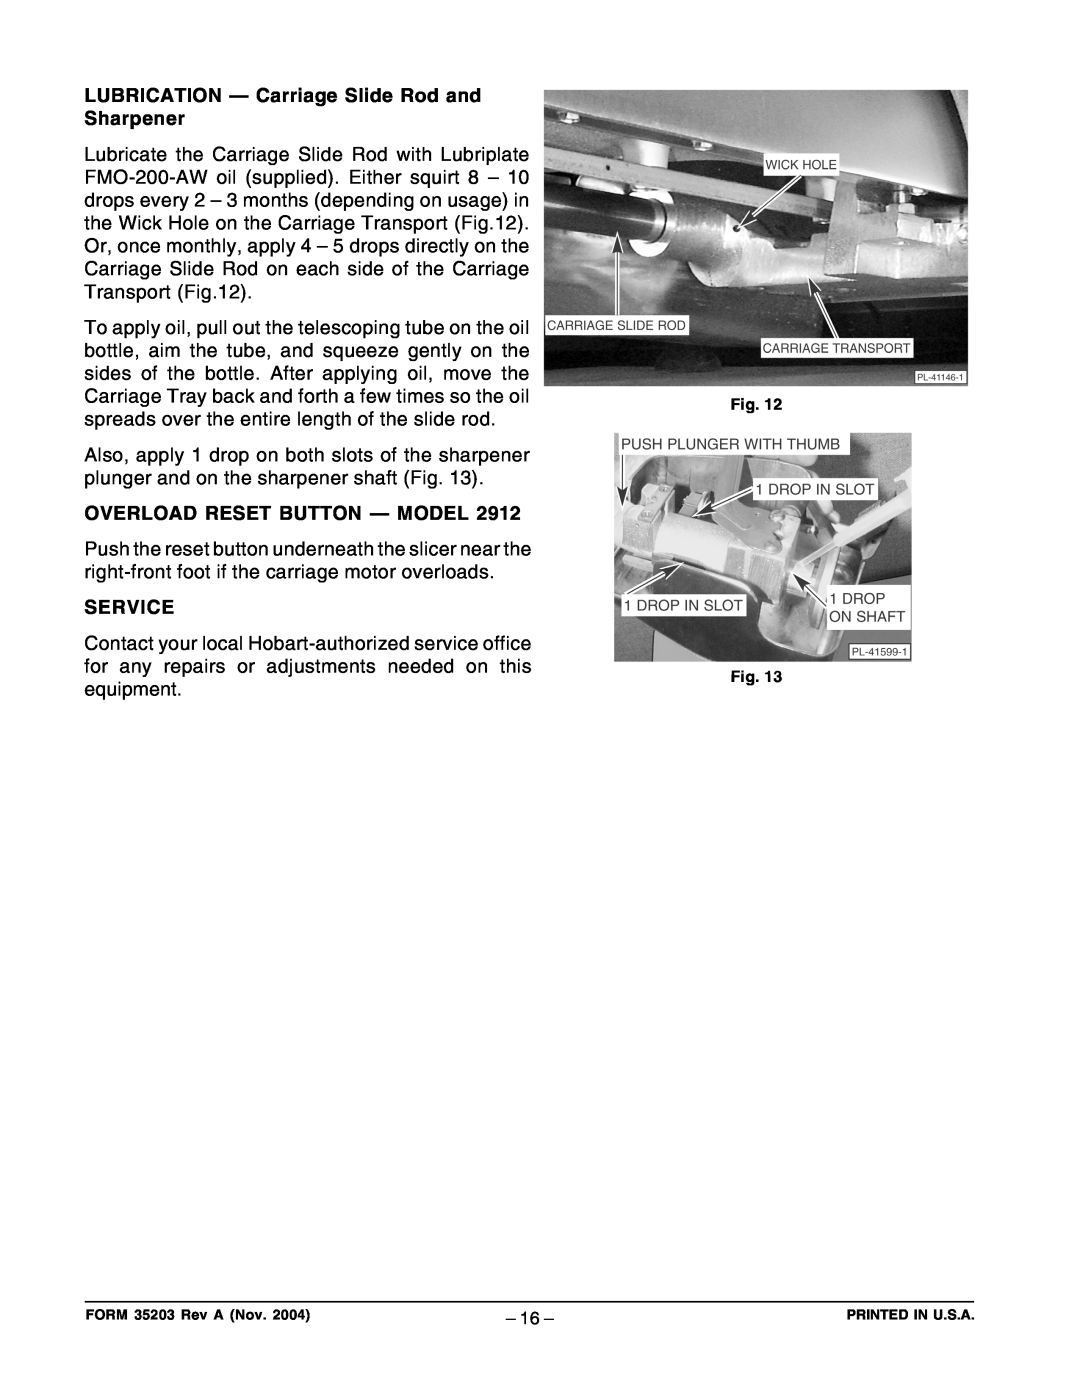 Hobart 2812 LUBRICATION - Carriage Slide Rod and Sharpener, Overload Reset Button - Model, Service, FORM 35203 Rev A Nov 